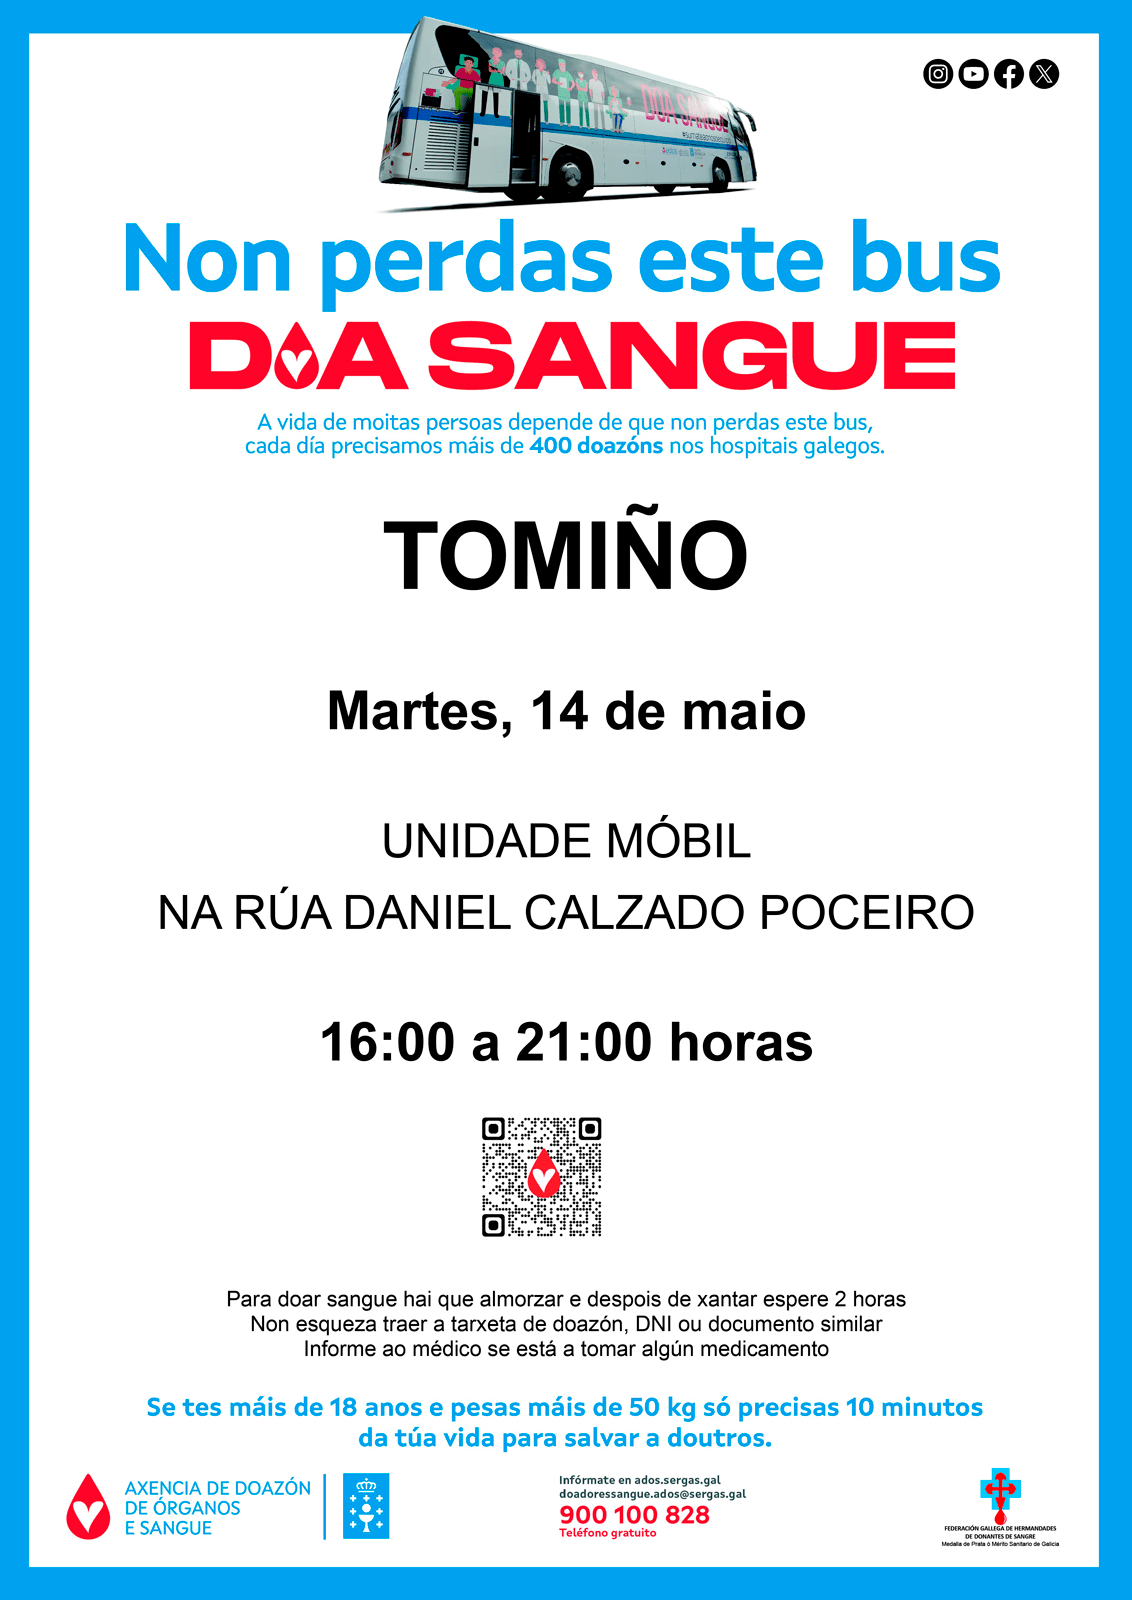 Unha unidade móbil de doazón de sangue visitará Tomiño o vindeiro 14 de maio